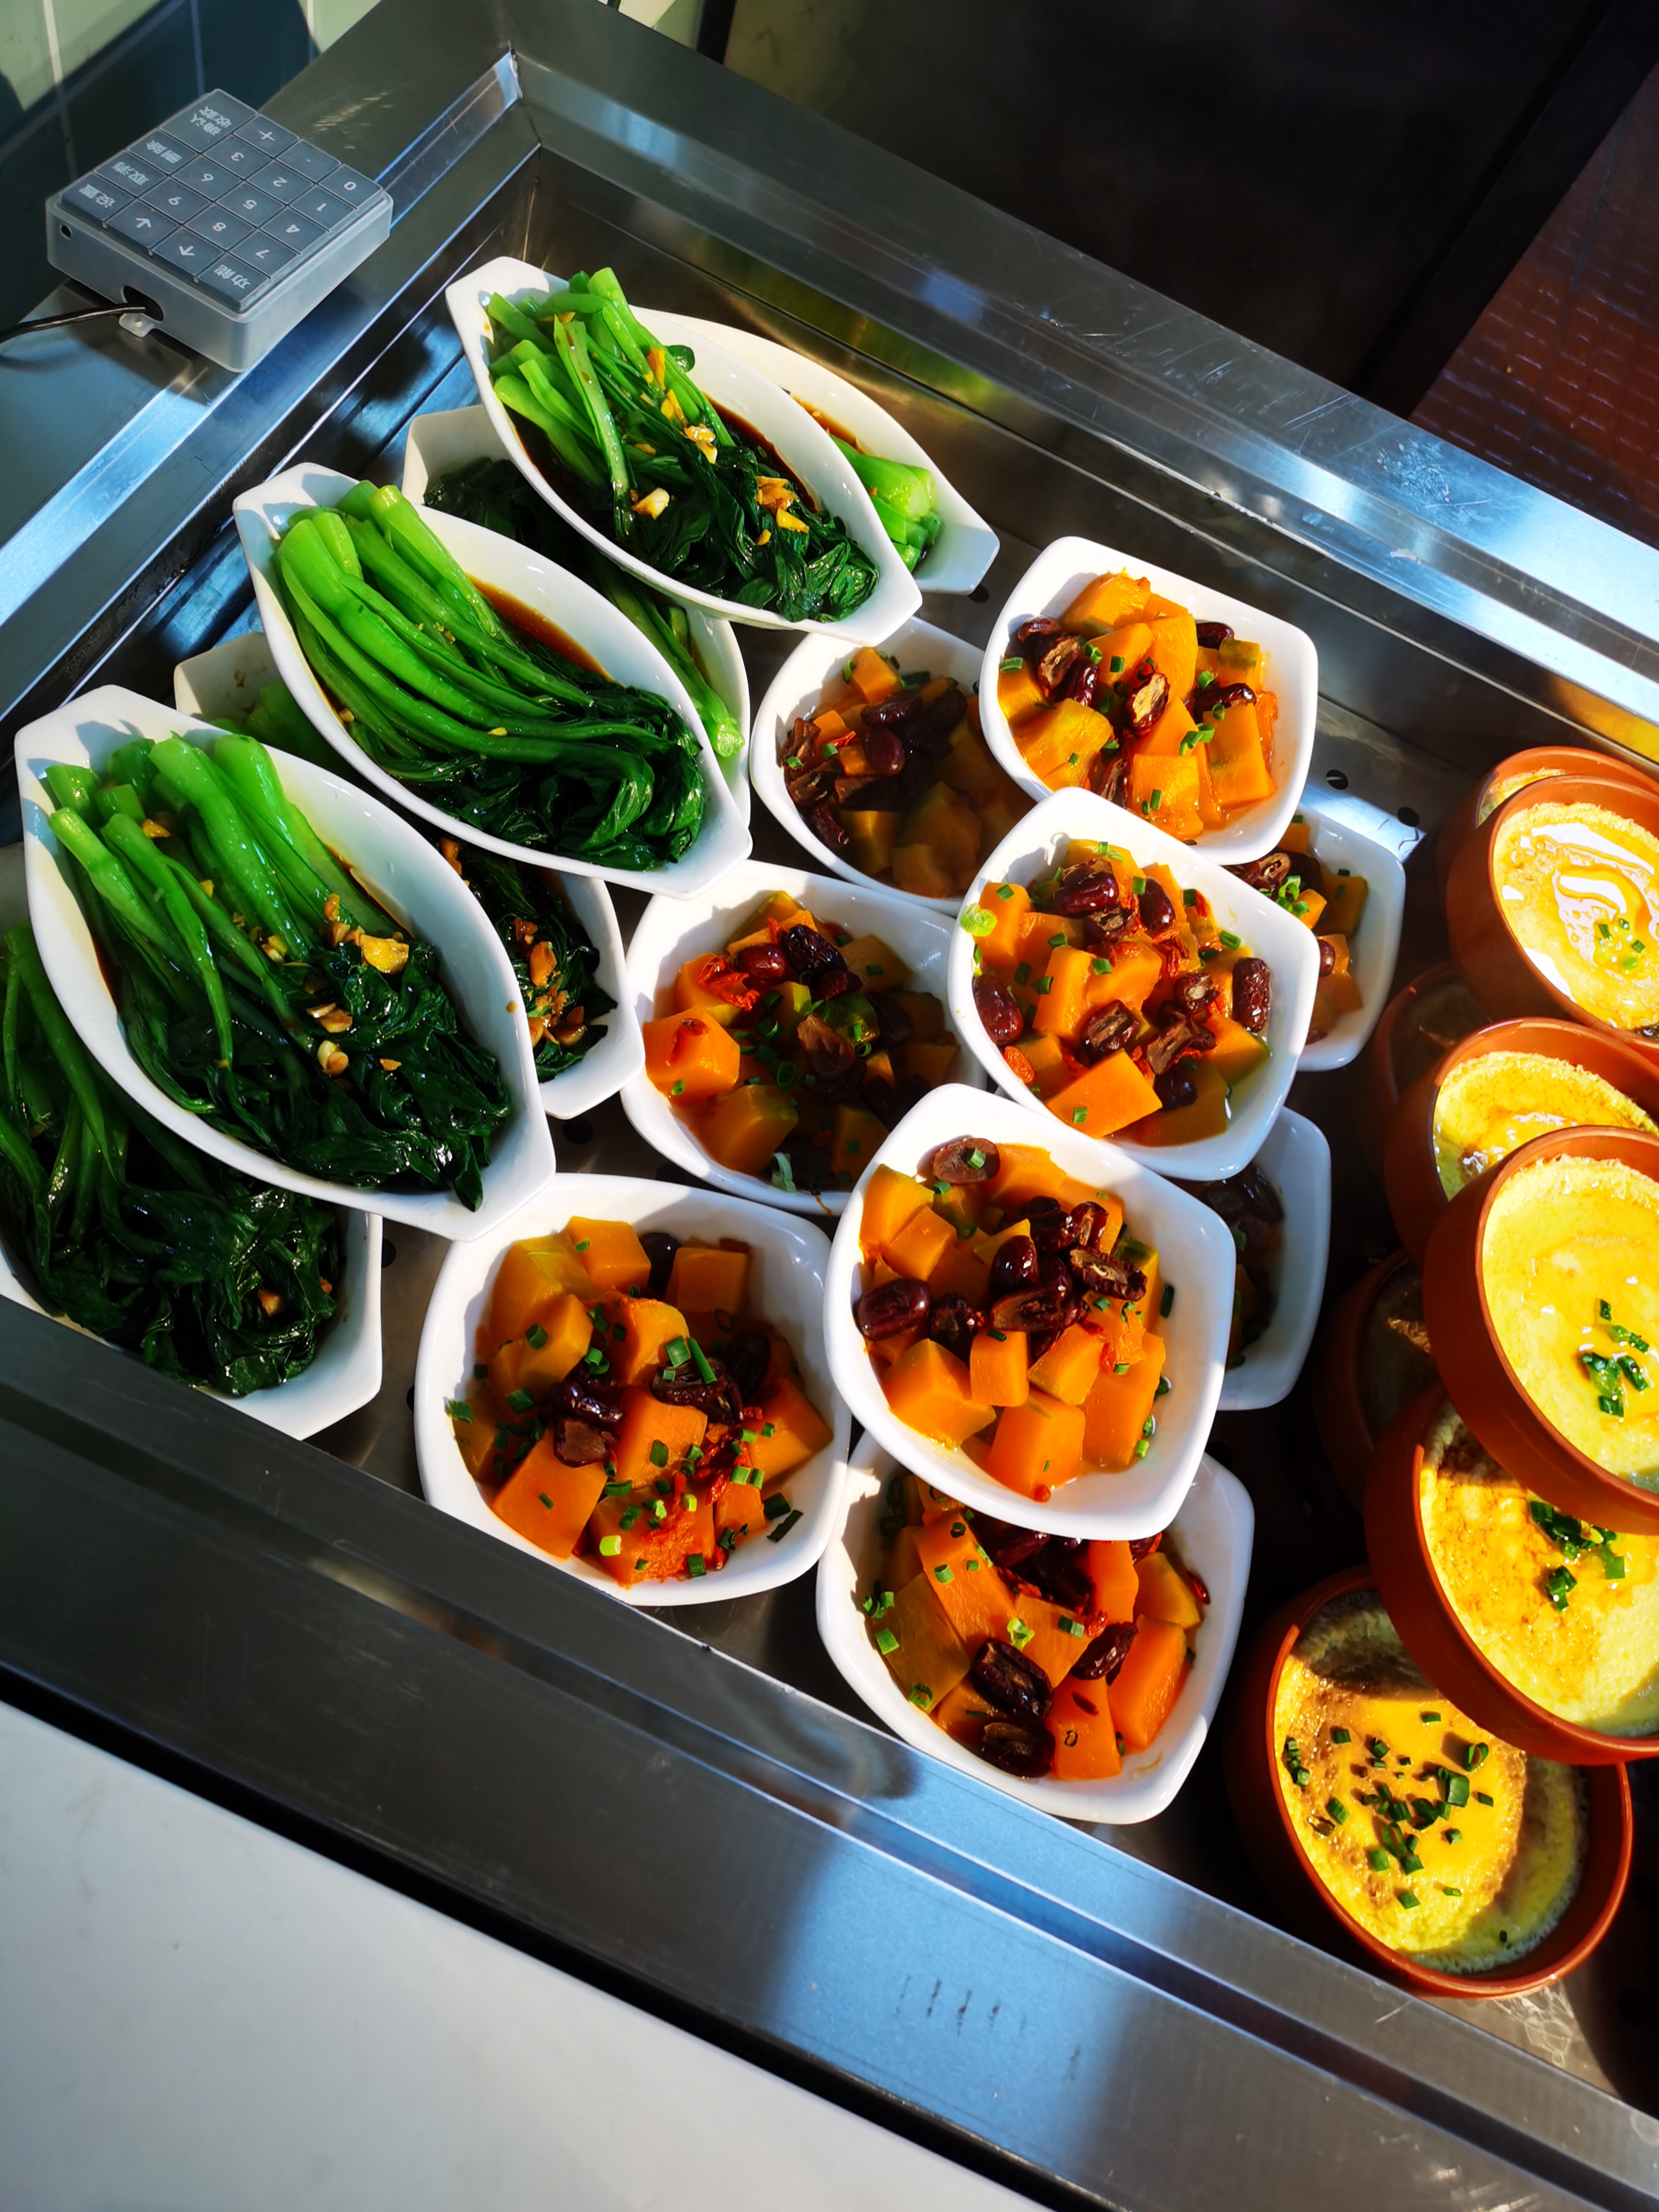 学校食堂食材管理出规范，开源膳食食堂从源头把控食品安全